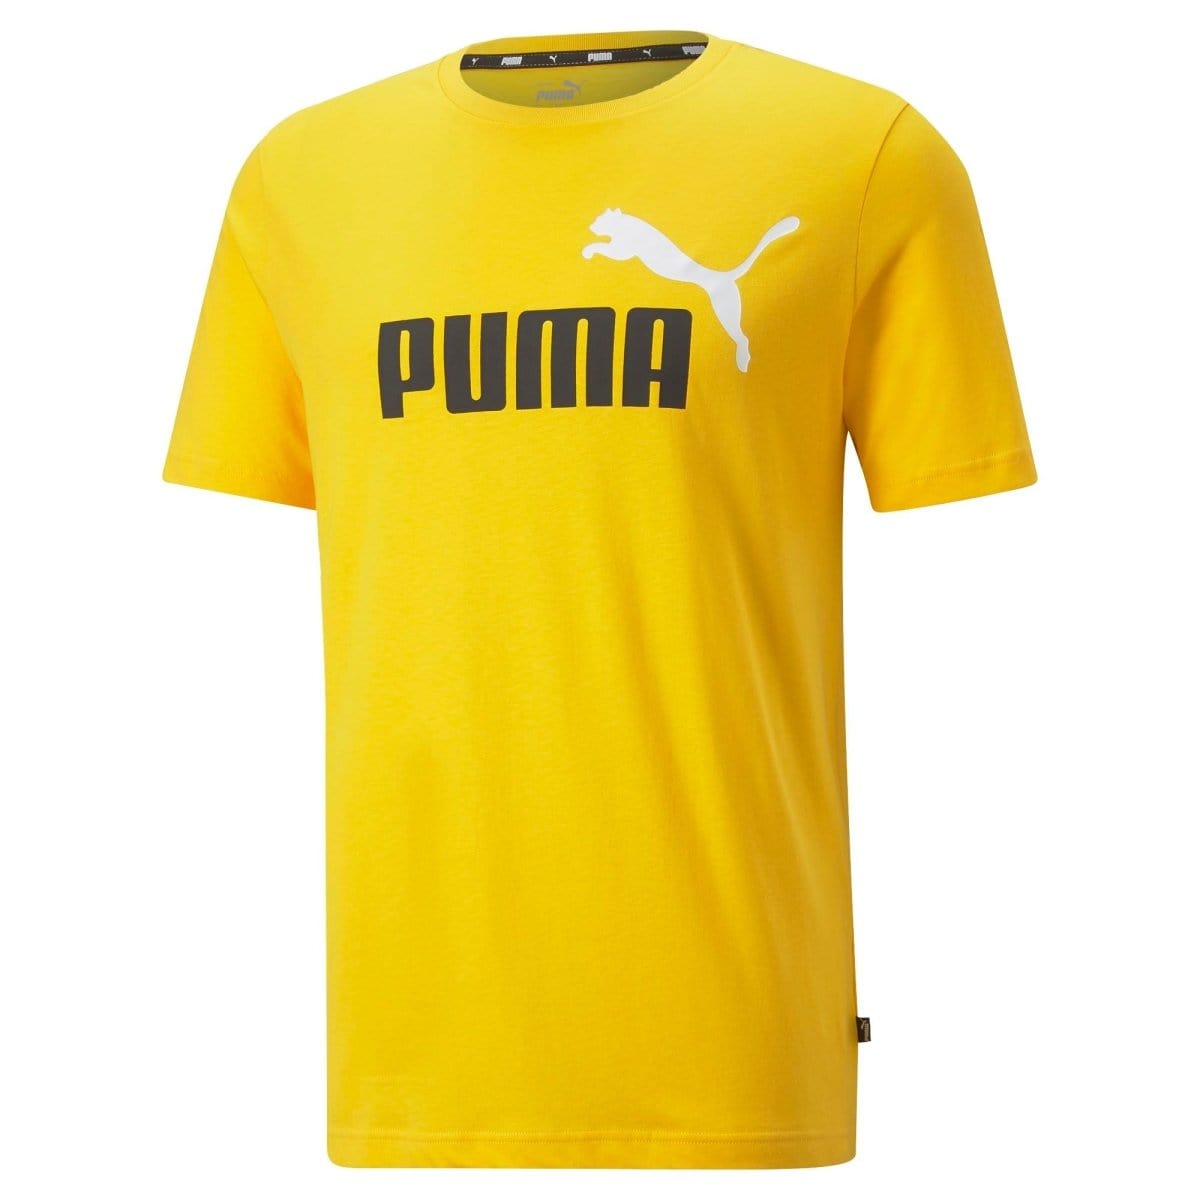 Puma PUMA MEN'S ESSENTIALS+ 2 COLOUR LOGO YELLOW TEE - INSPORT